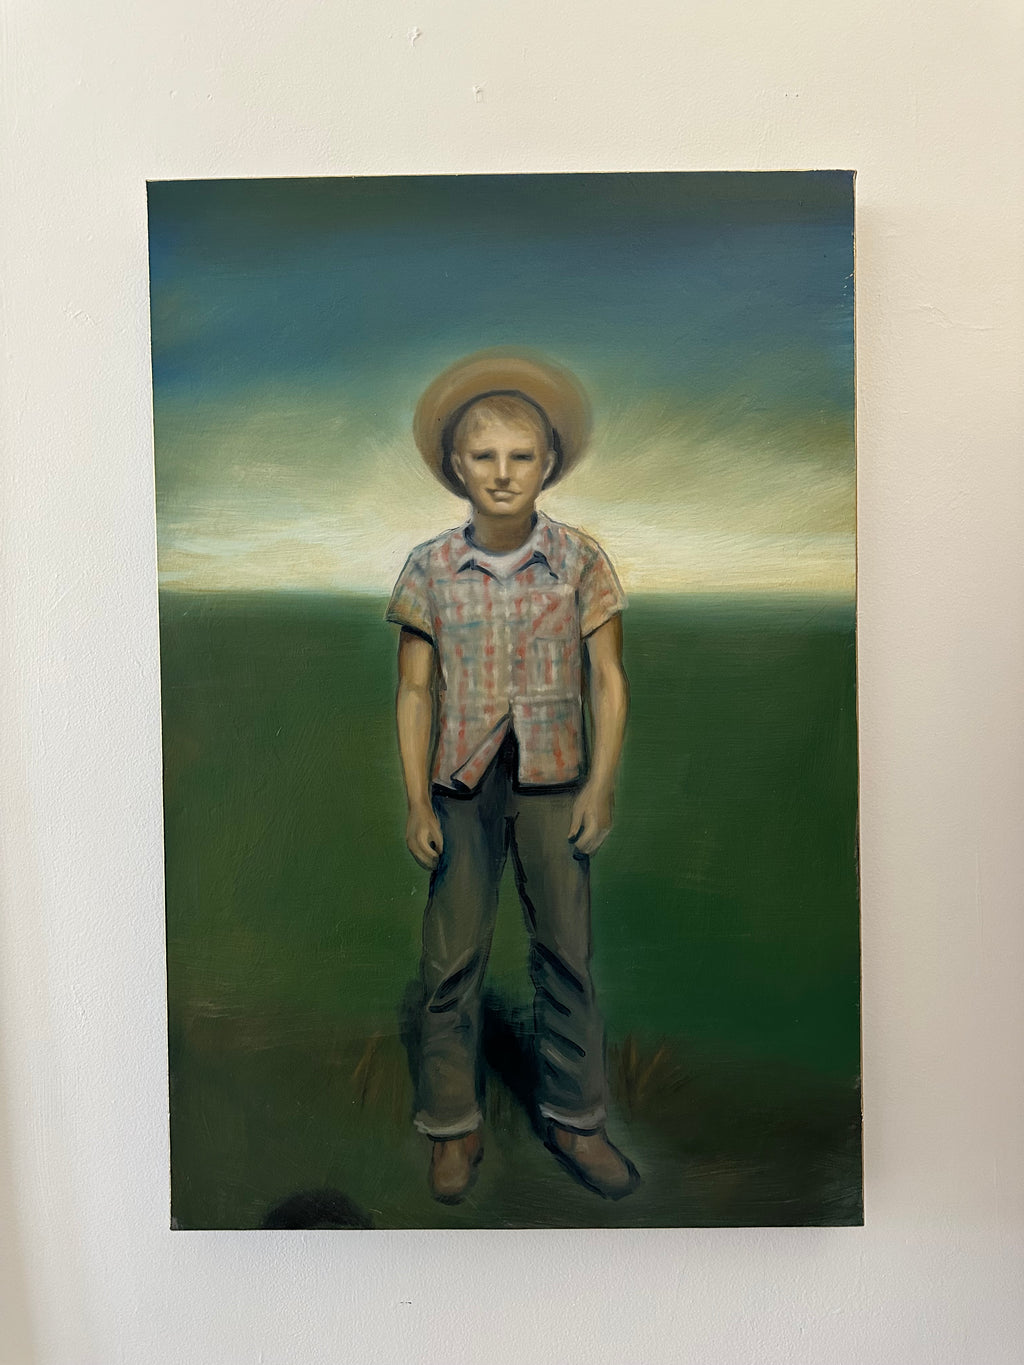 "Farm Boy" (Dad As a Boy) 36" x 24" oil on canvas by Colette Cosentino